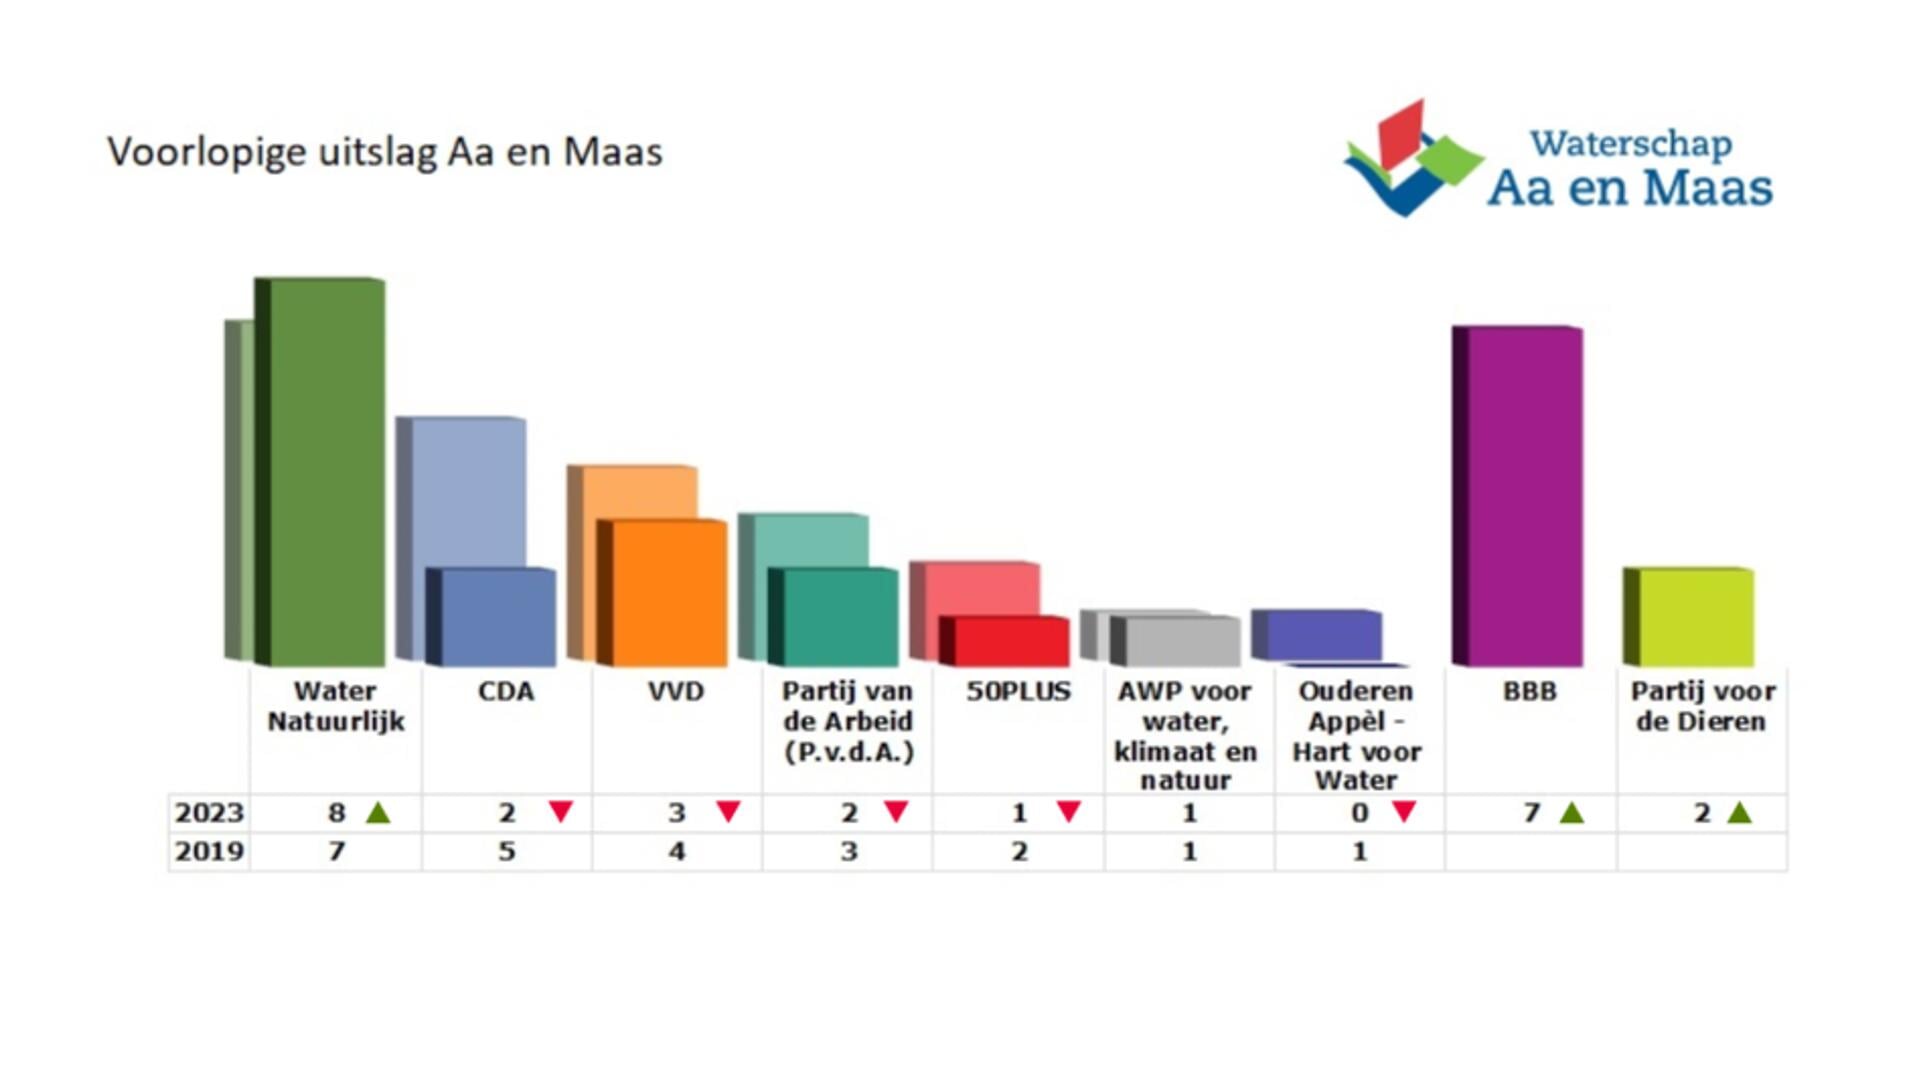 Voorlopige uitslag waterschapsverkiezingen 2023 Aa en Maas.